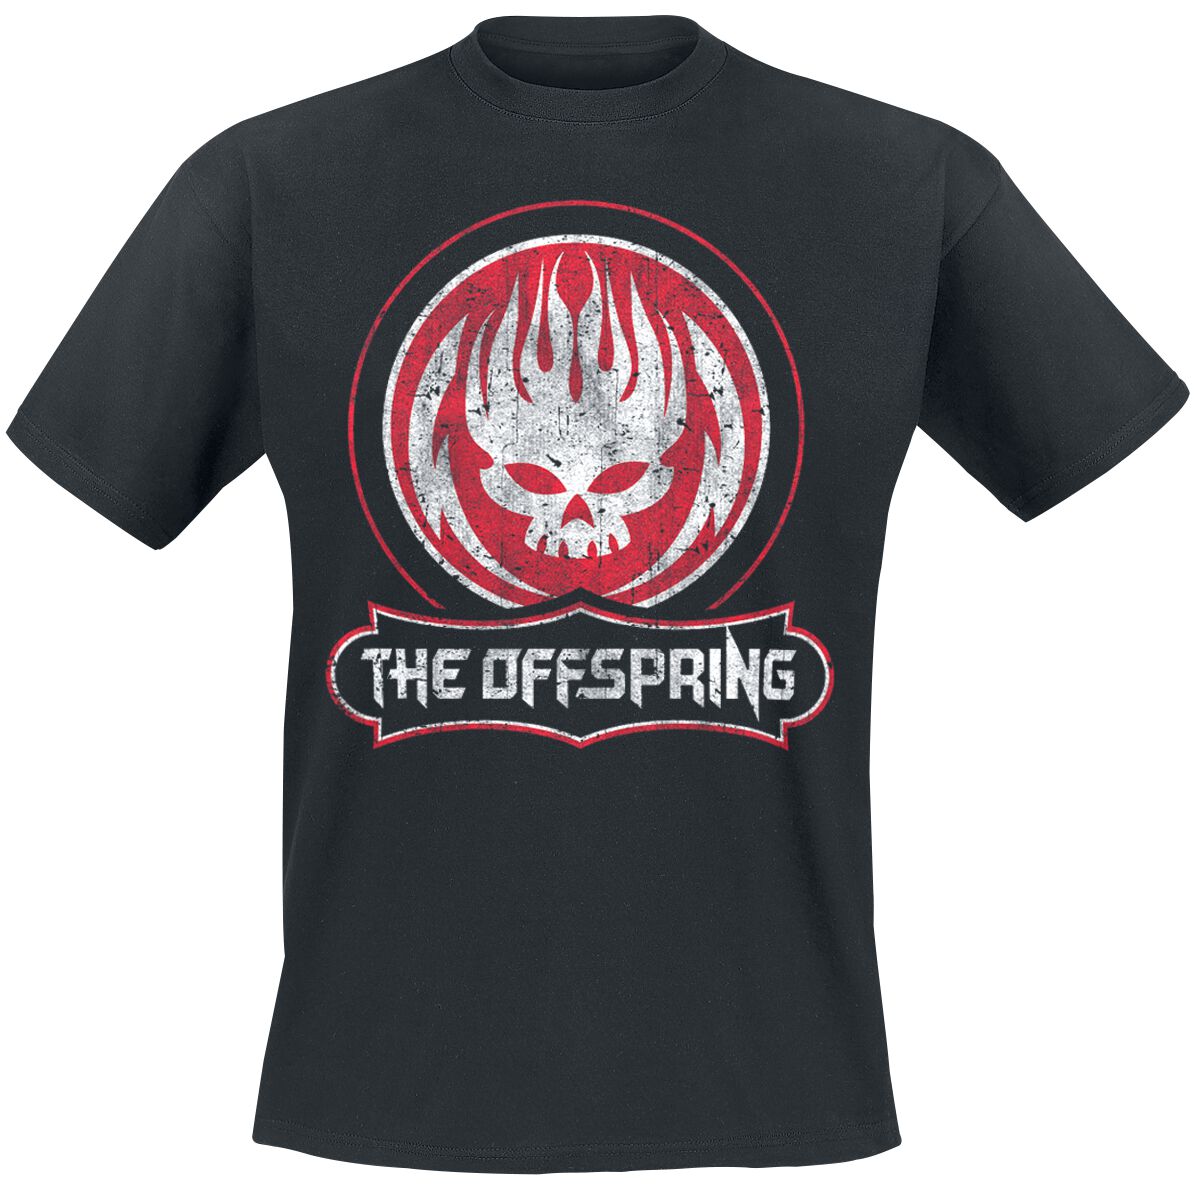 The Offspring T-Shirt - Distressed Skull - S bis XXL - für Männer - Größe S - schwarz  - Lizenziertes Merchandise!